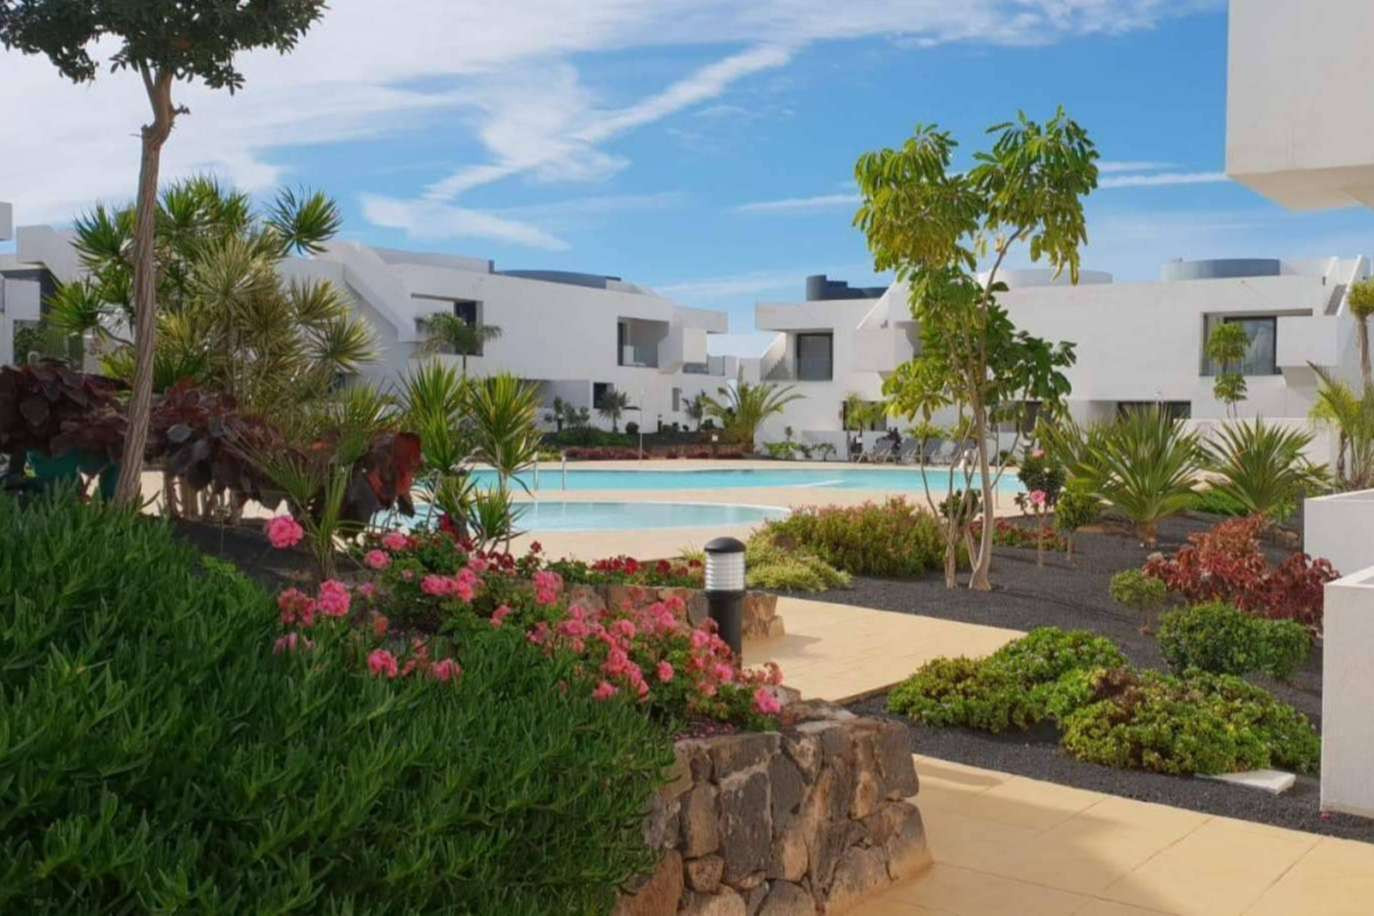  Apartamentos y villas en venta en Fuerteventura de la mano de Casilla de Costa 